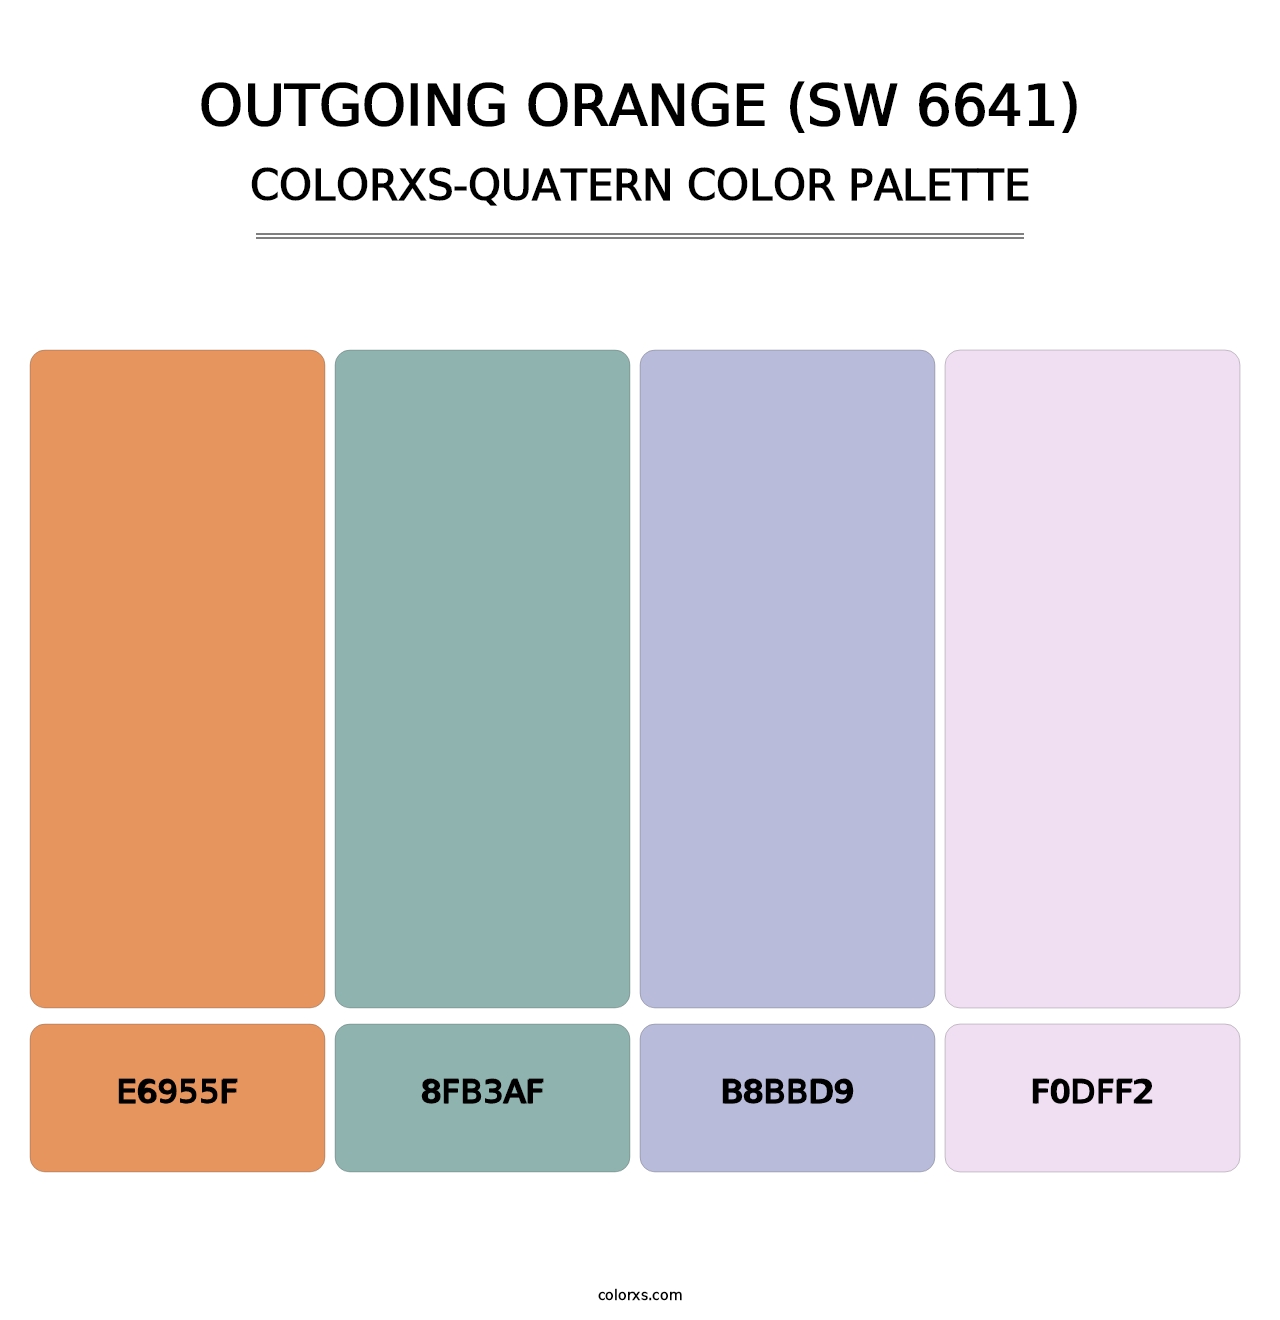 Outgoing Orange (SW 6641) - Colorxs Quatern Palette